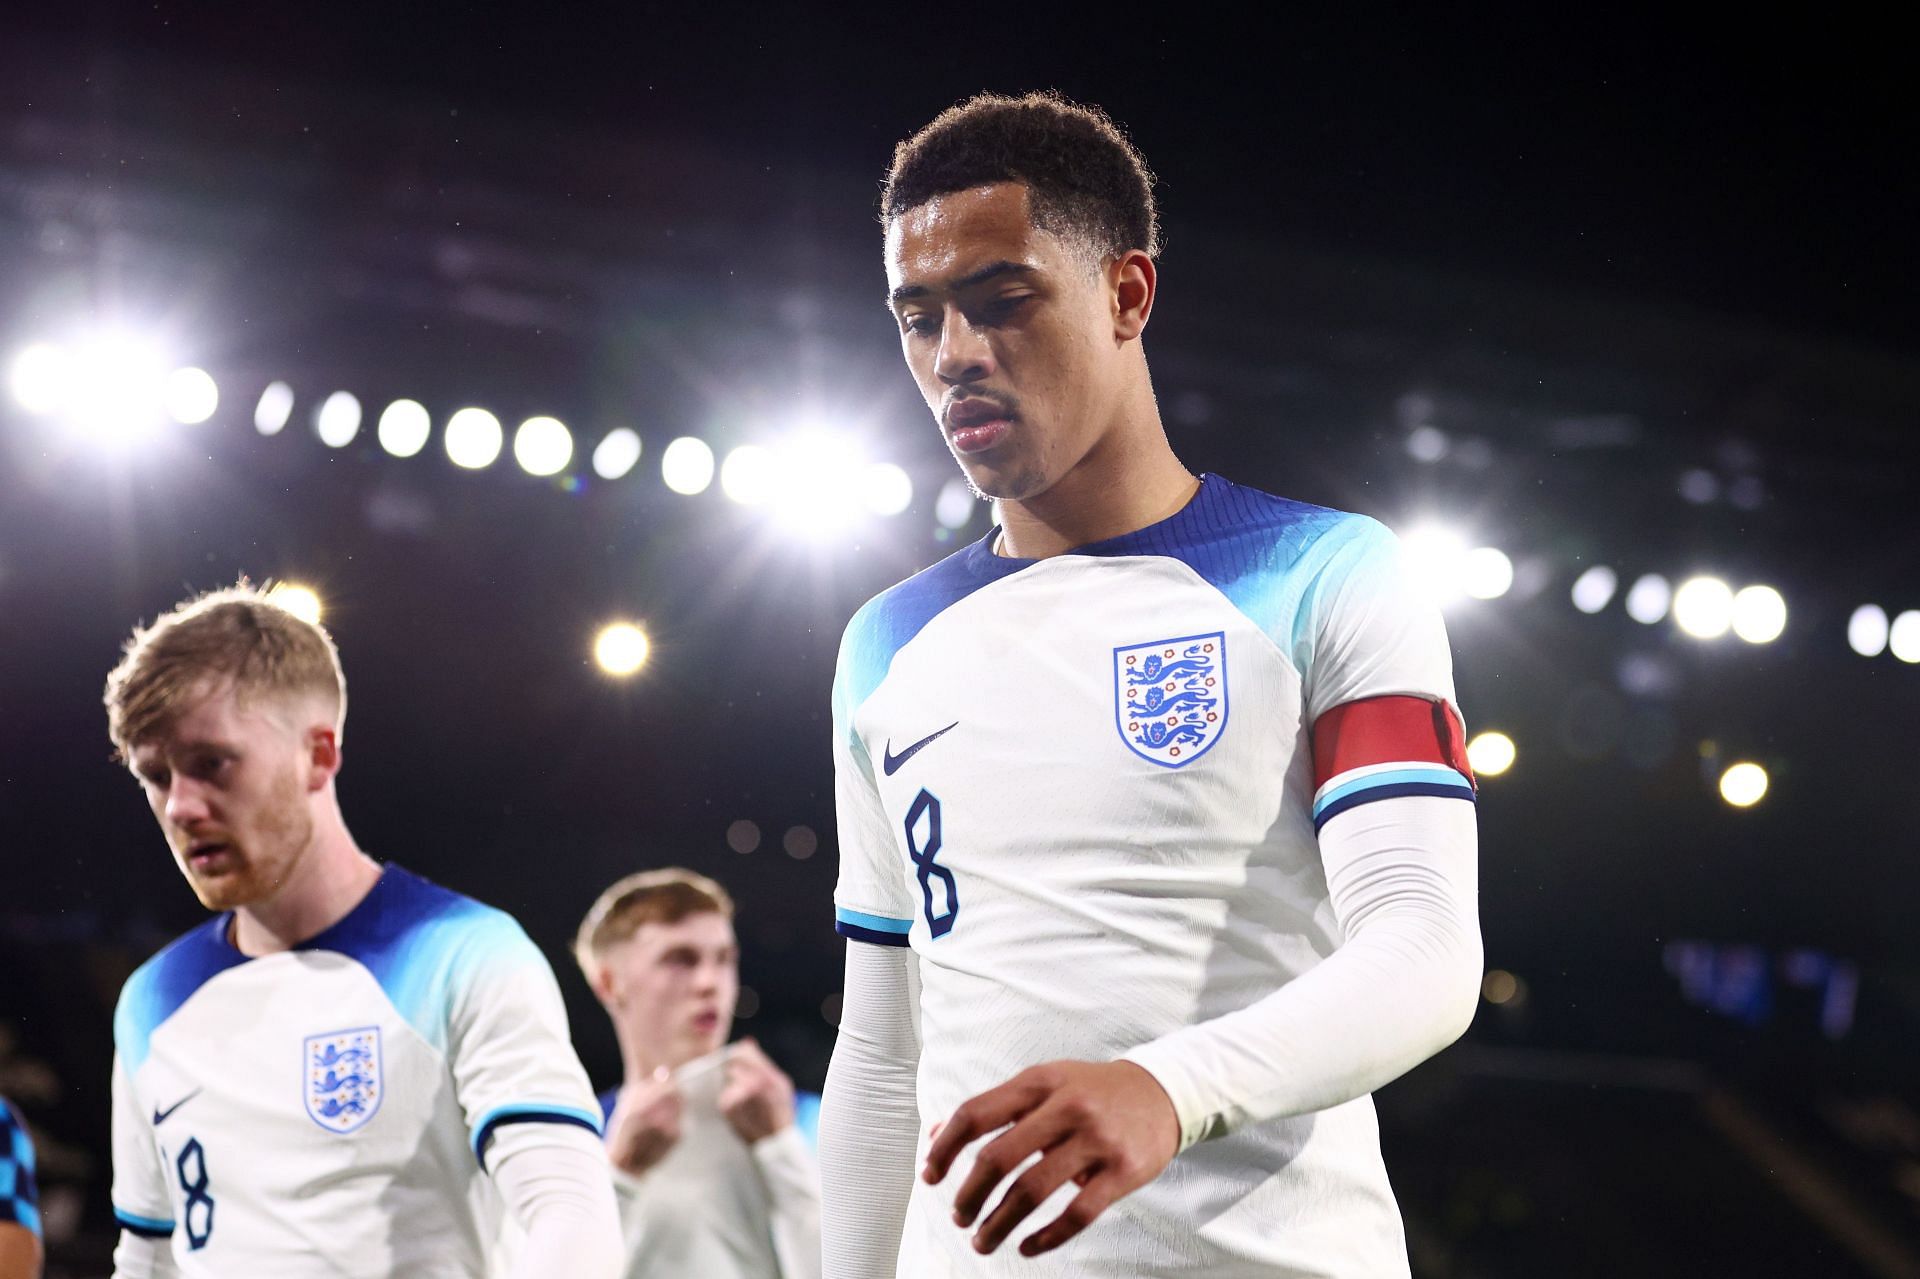 England U21 will face Israel U21 on Sunday